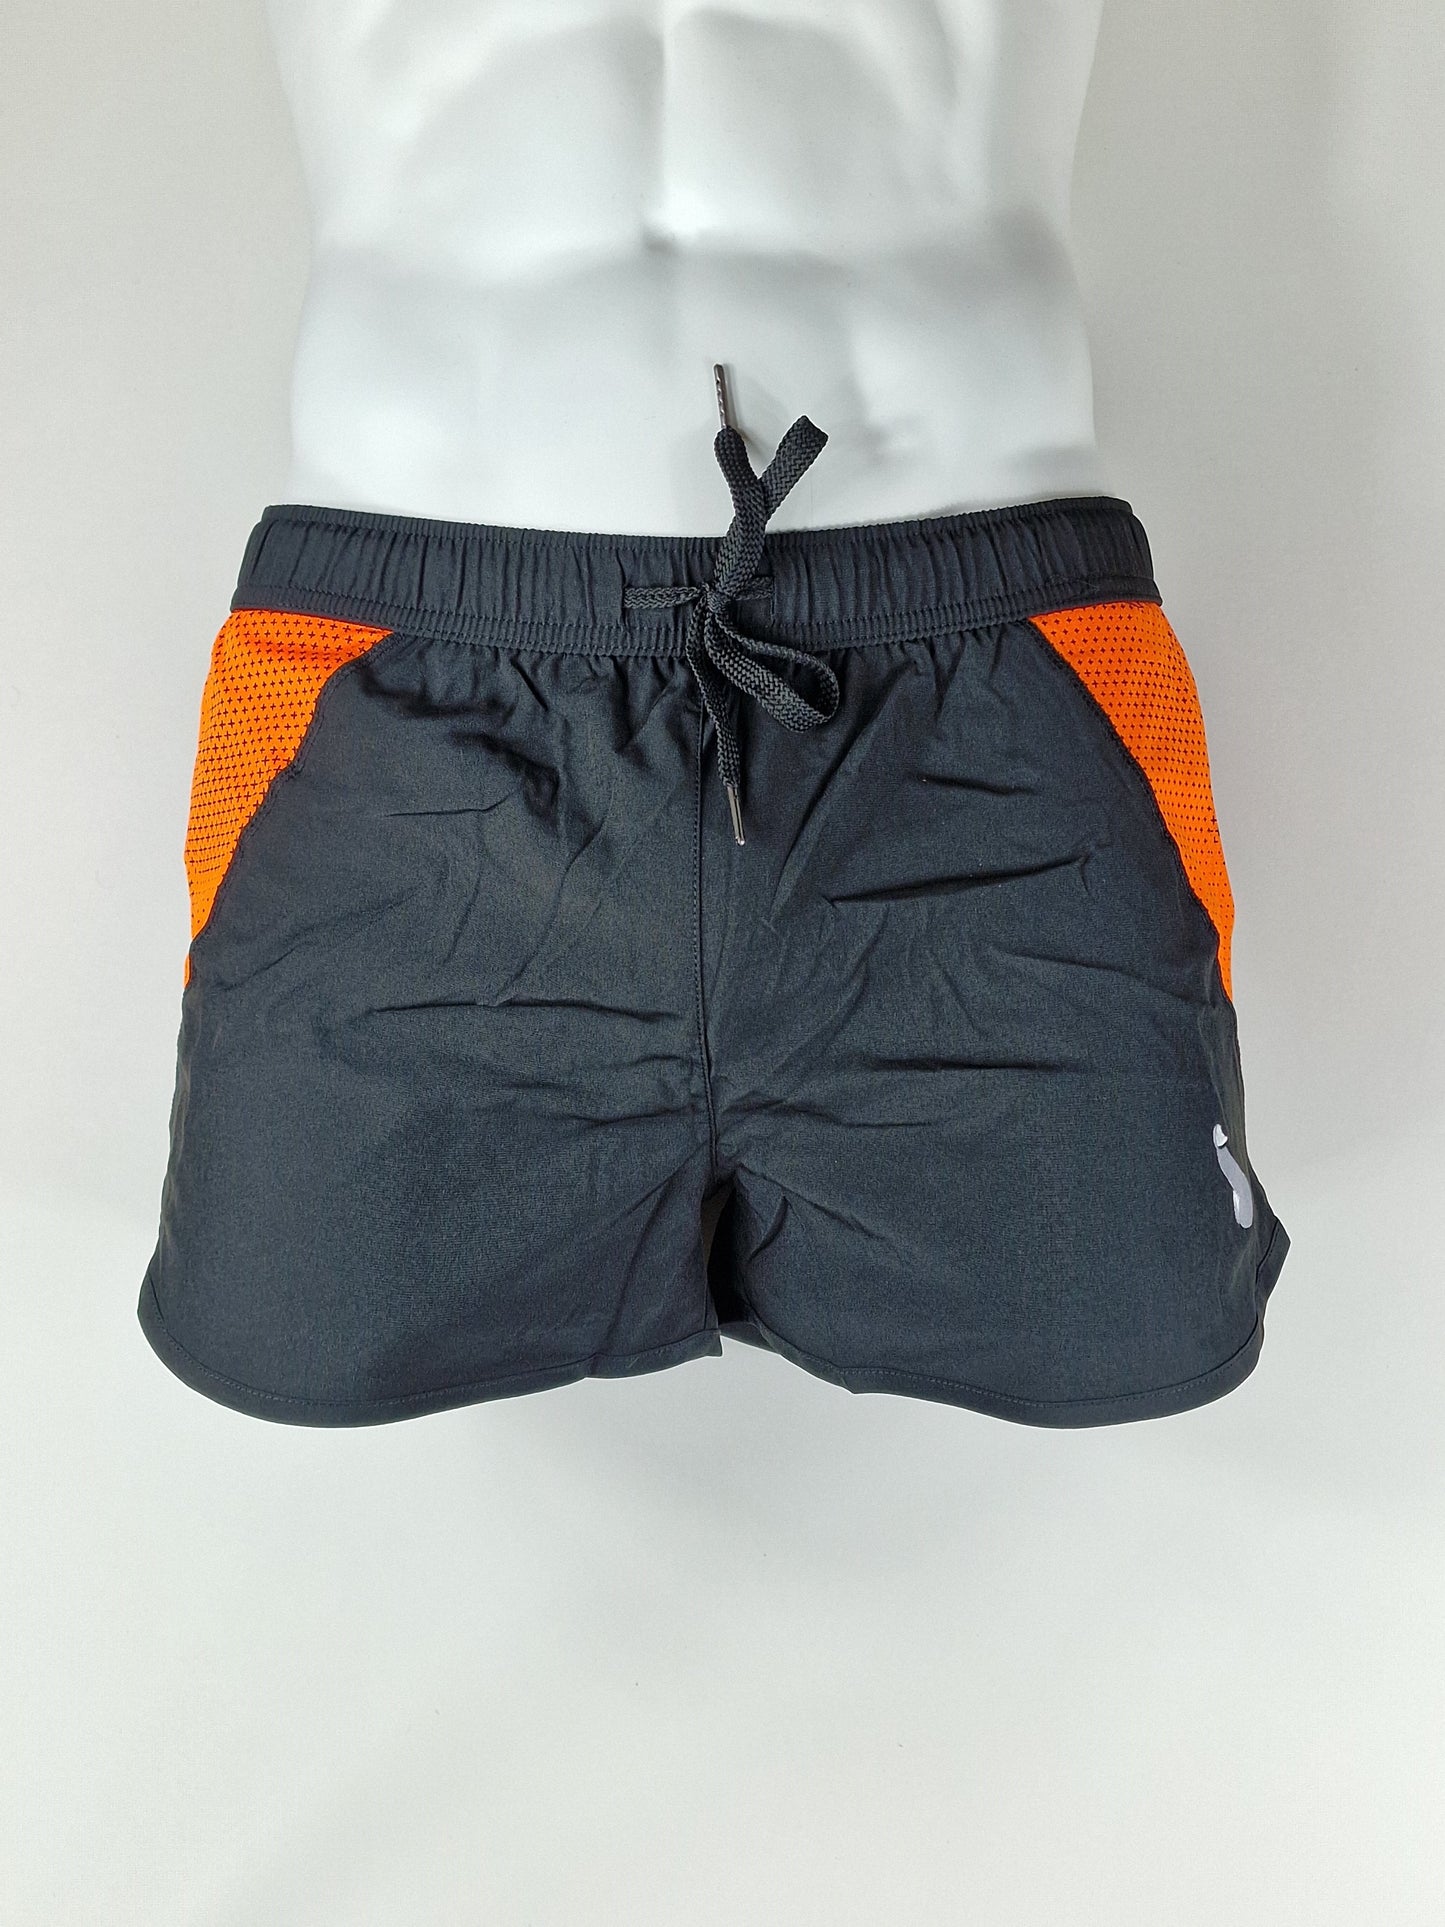 Träningsshorts, badshorts eller shorts för herr eller dam - Svart/Orange